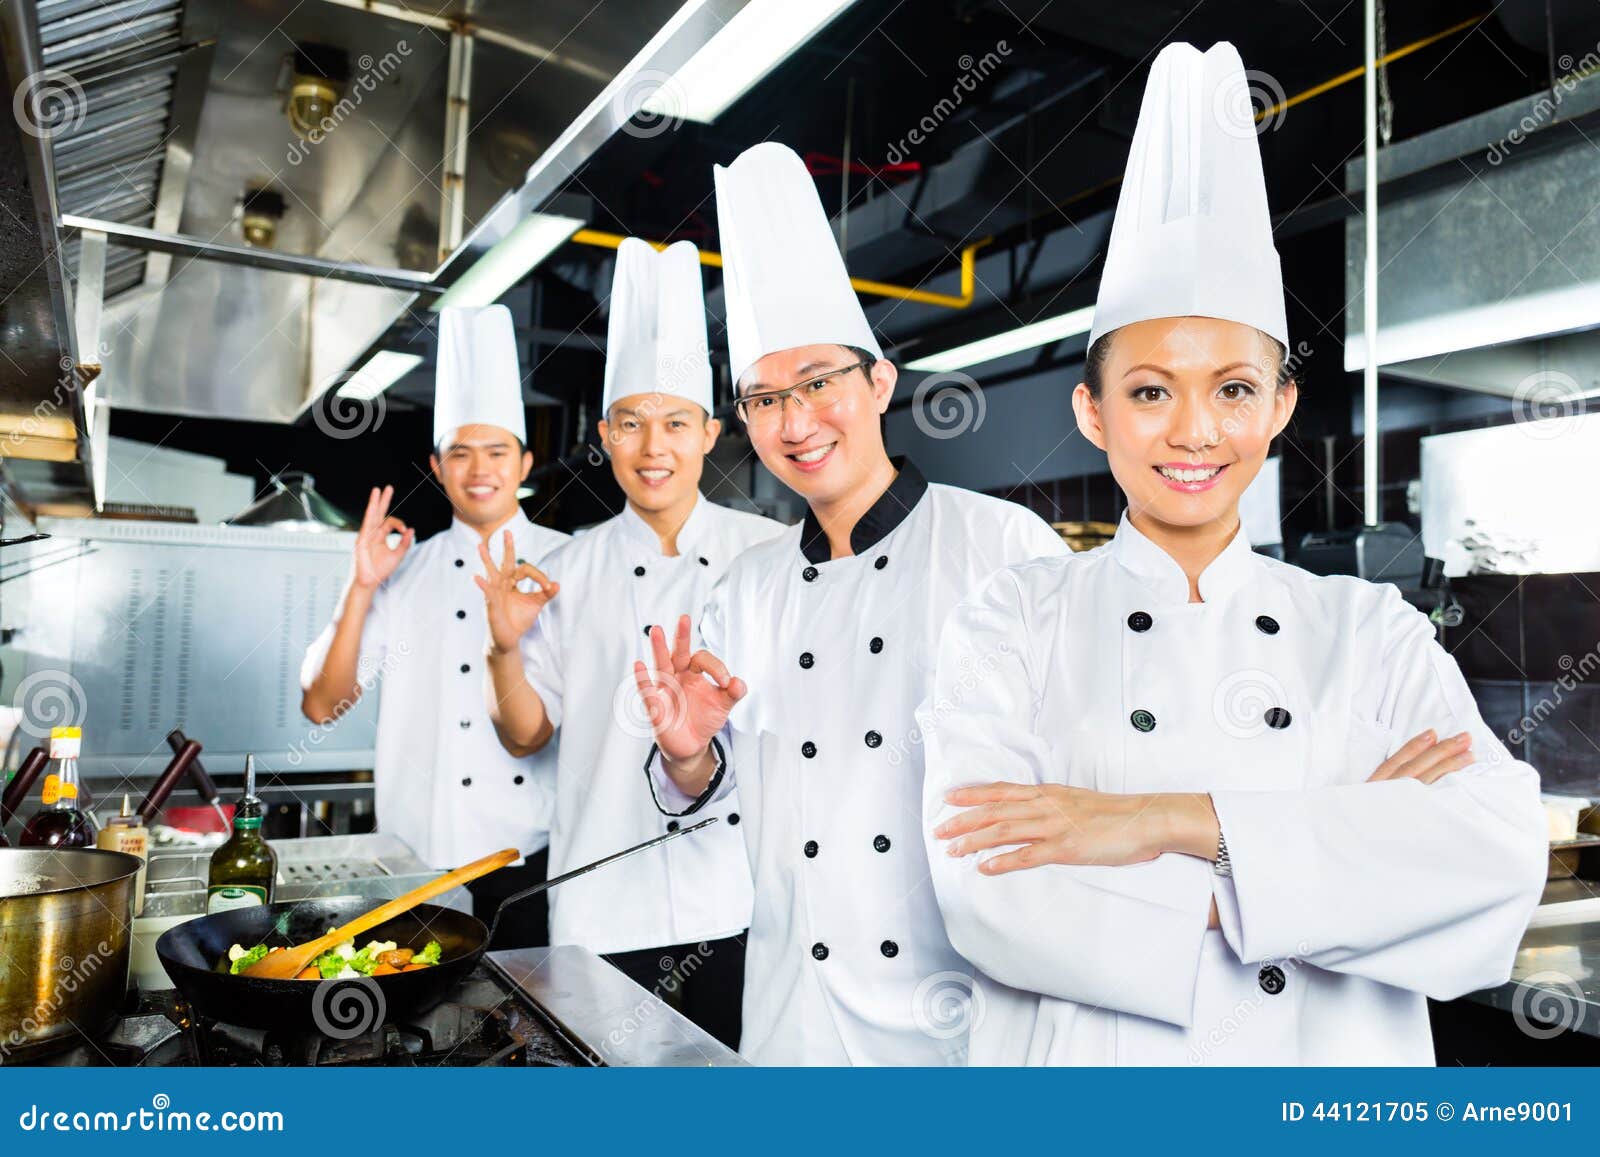 Asian Chefs In Hotel Restaurant Kitchen Stock Photo 